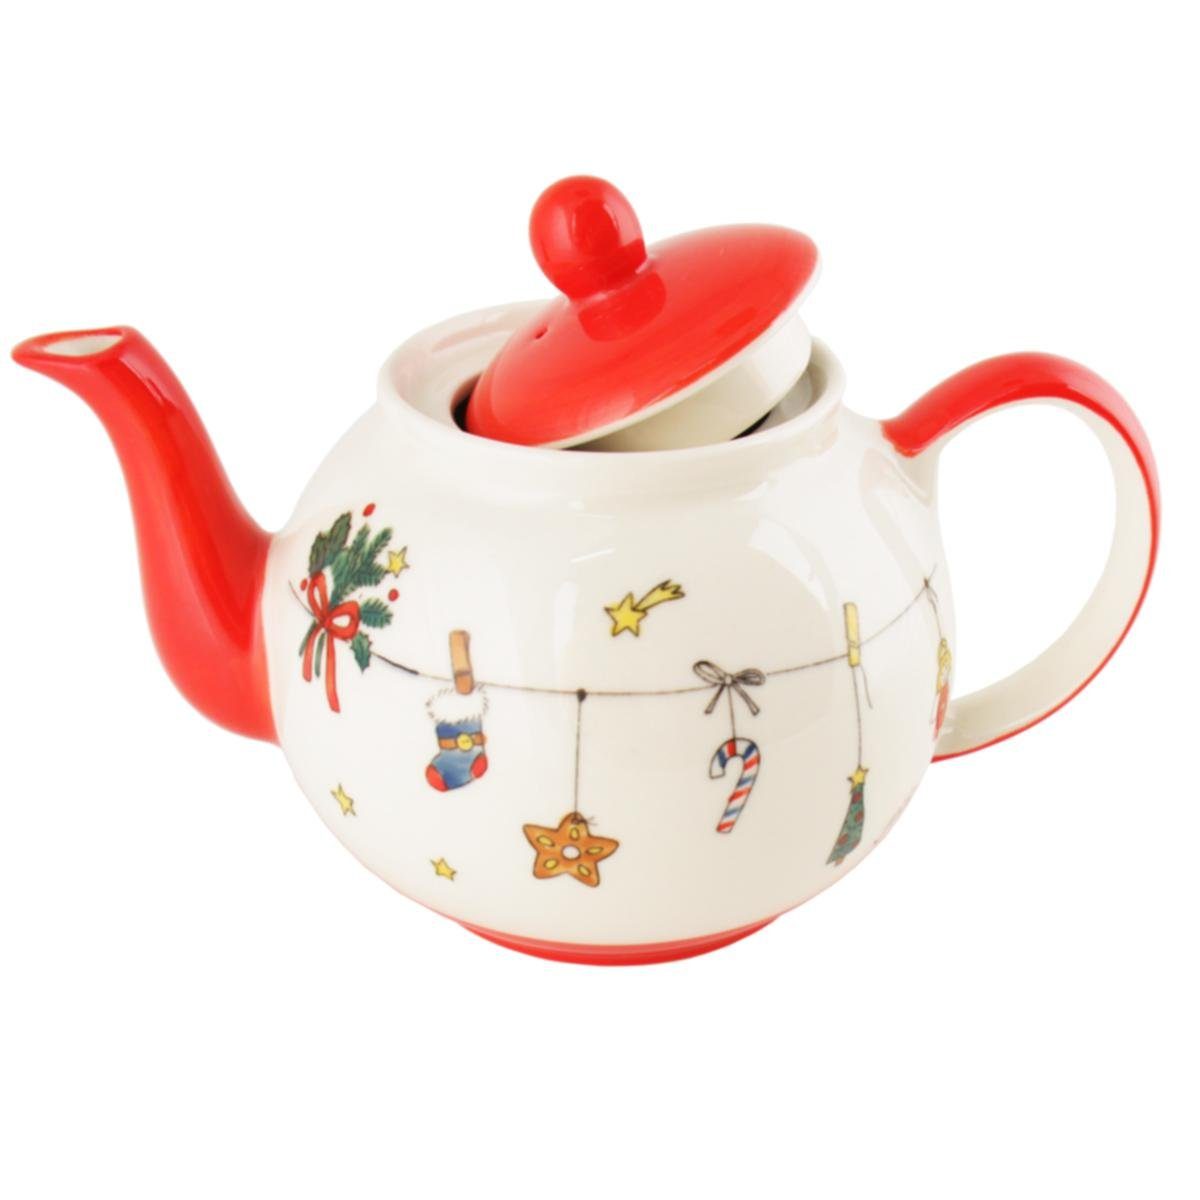 440s Teekanne 440s-Exklusiv Mila (Set) sehr l, 1,2 Keramik-Teekanne Weihnachtet ca. 1.2 Es Liter